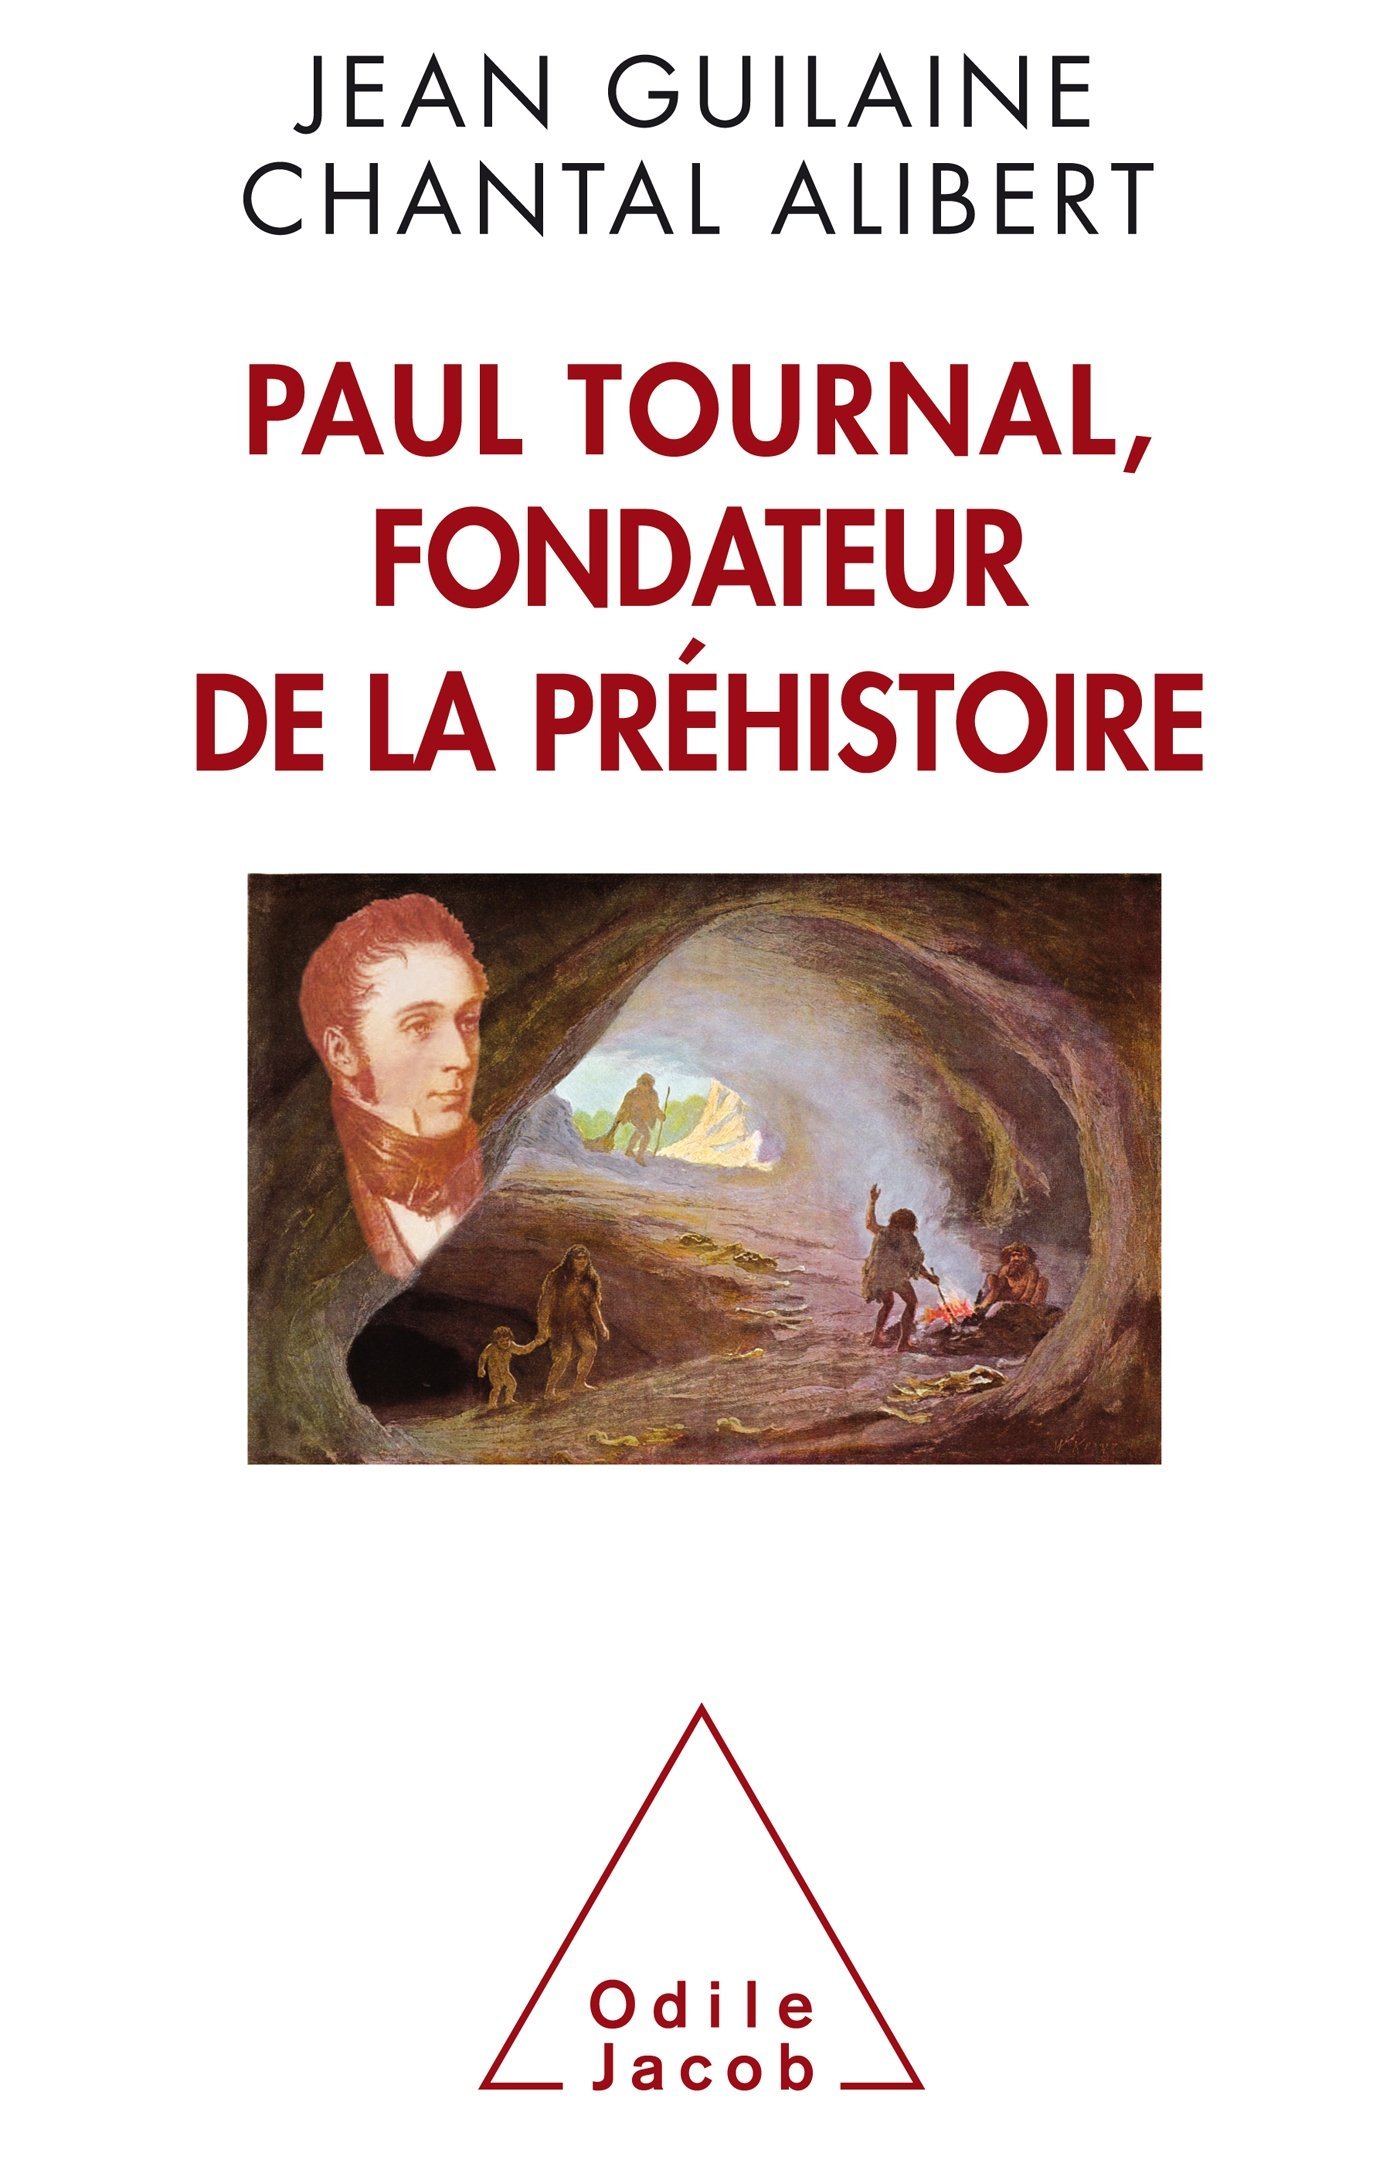 Paul Tournal, fondateur de la préhistoire, 2016, 320 p.